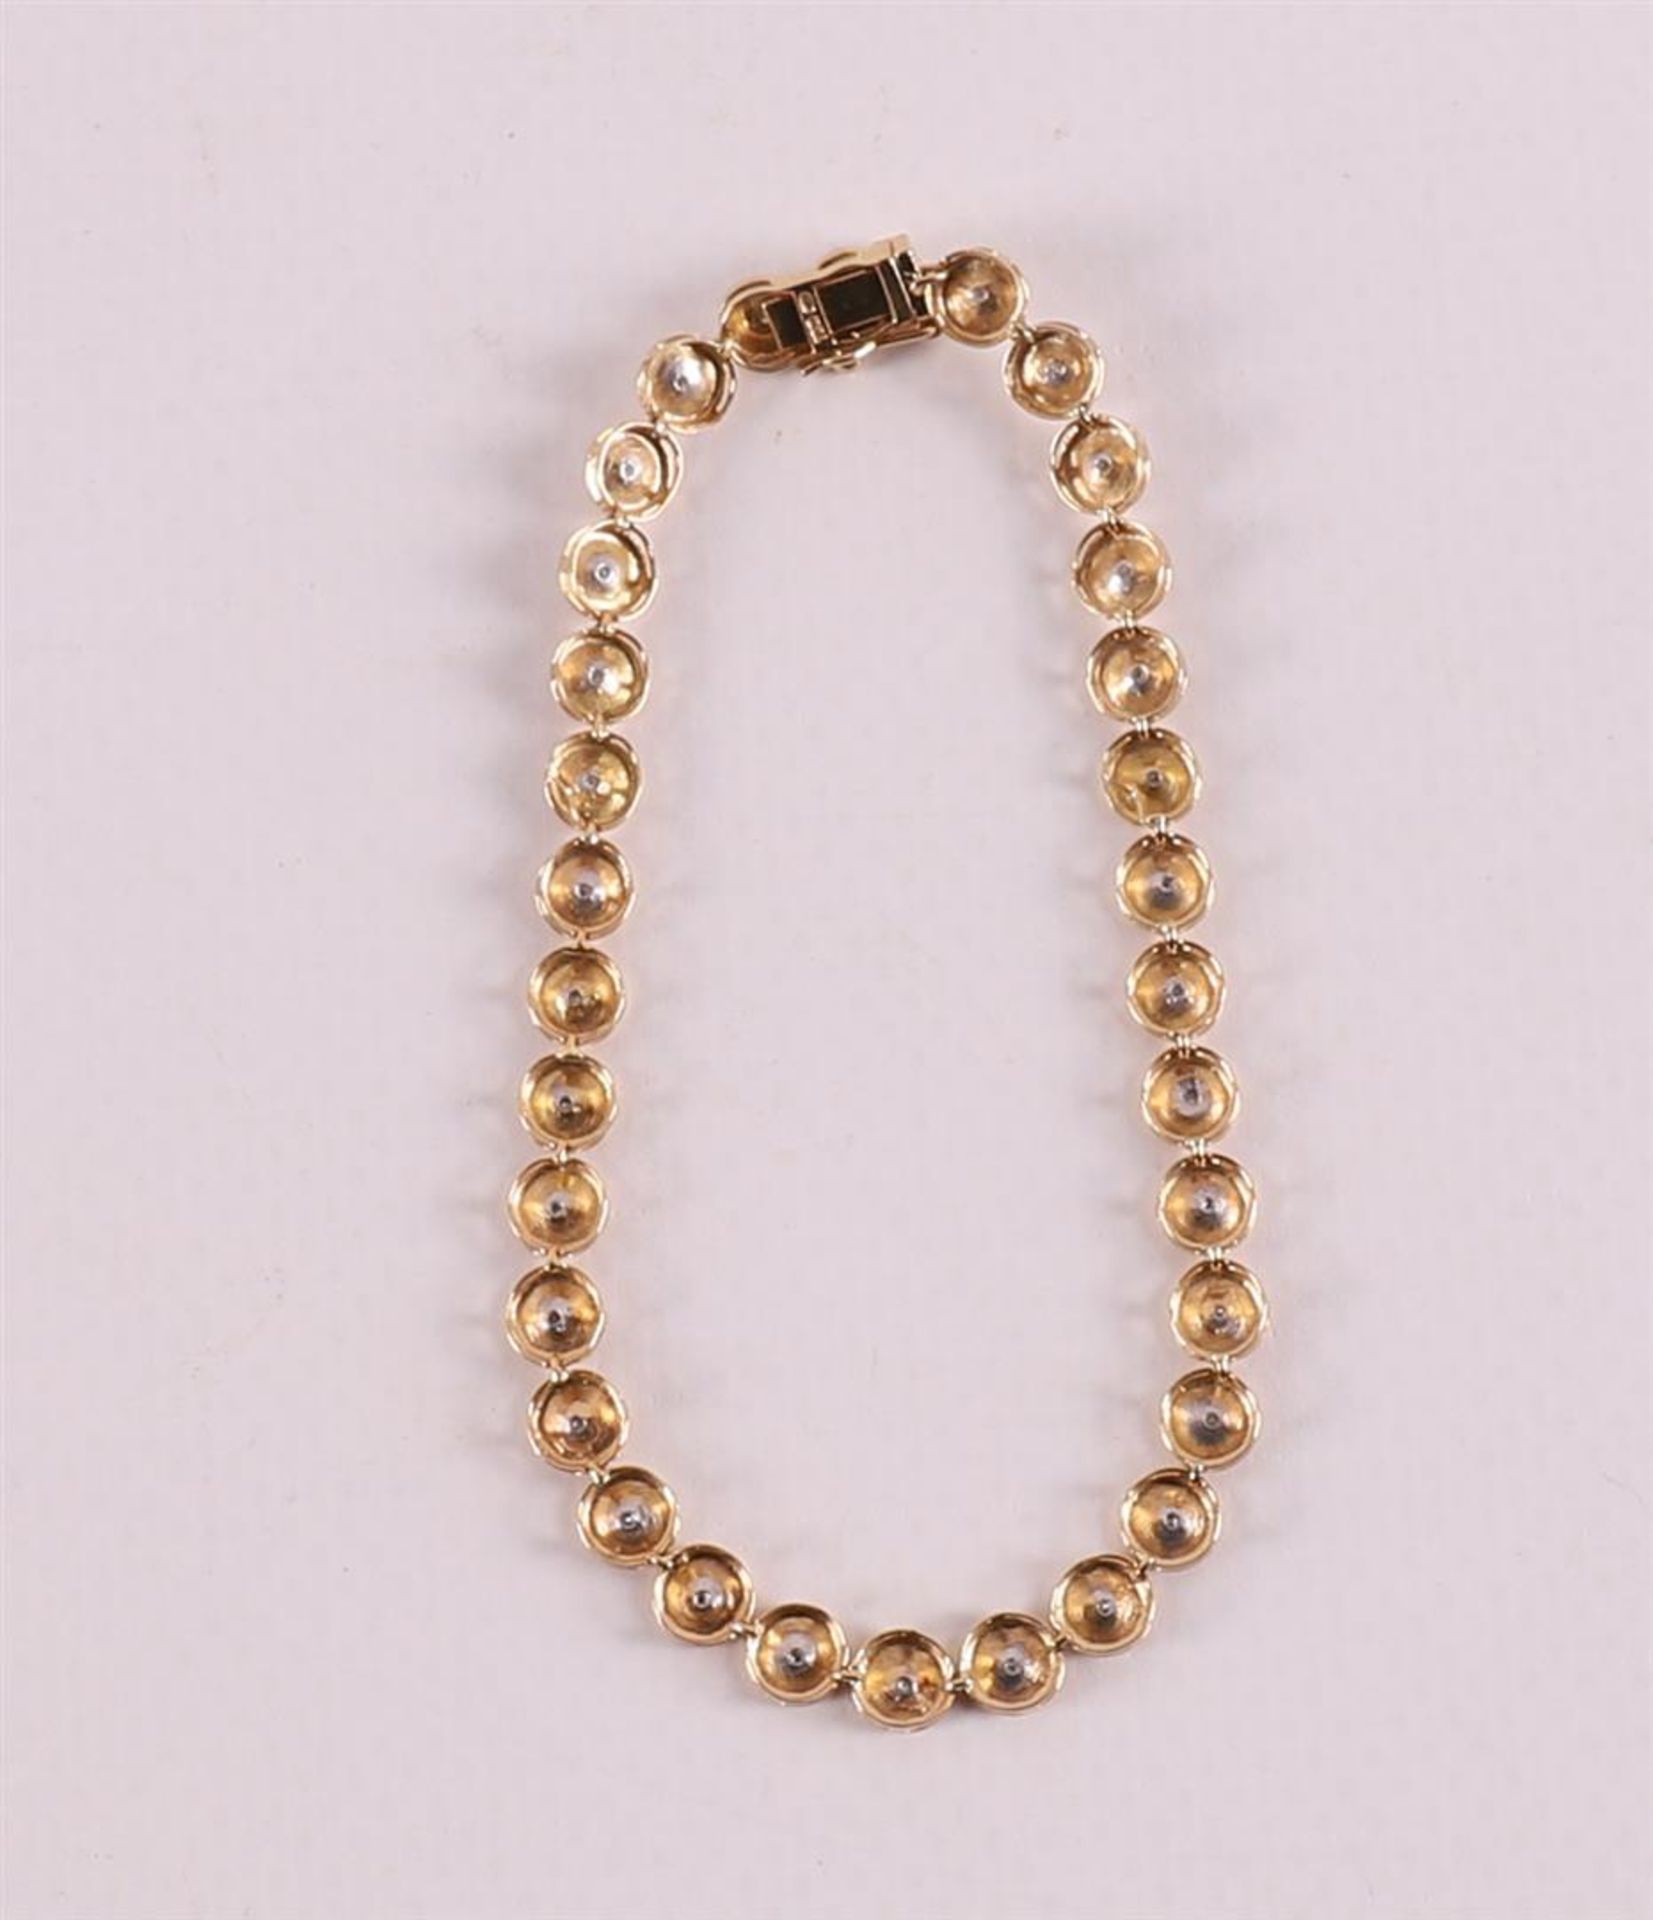 An 18 kt gold tennis bracelet with 32 diamonds. - Bild 2 aus 3